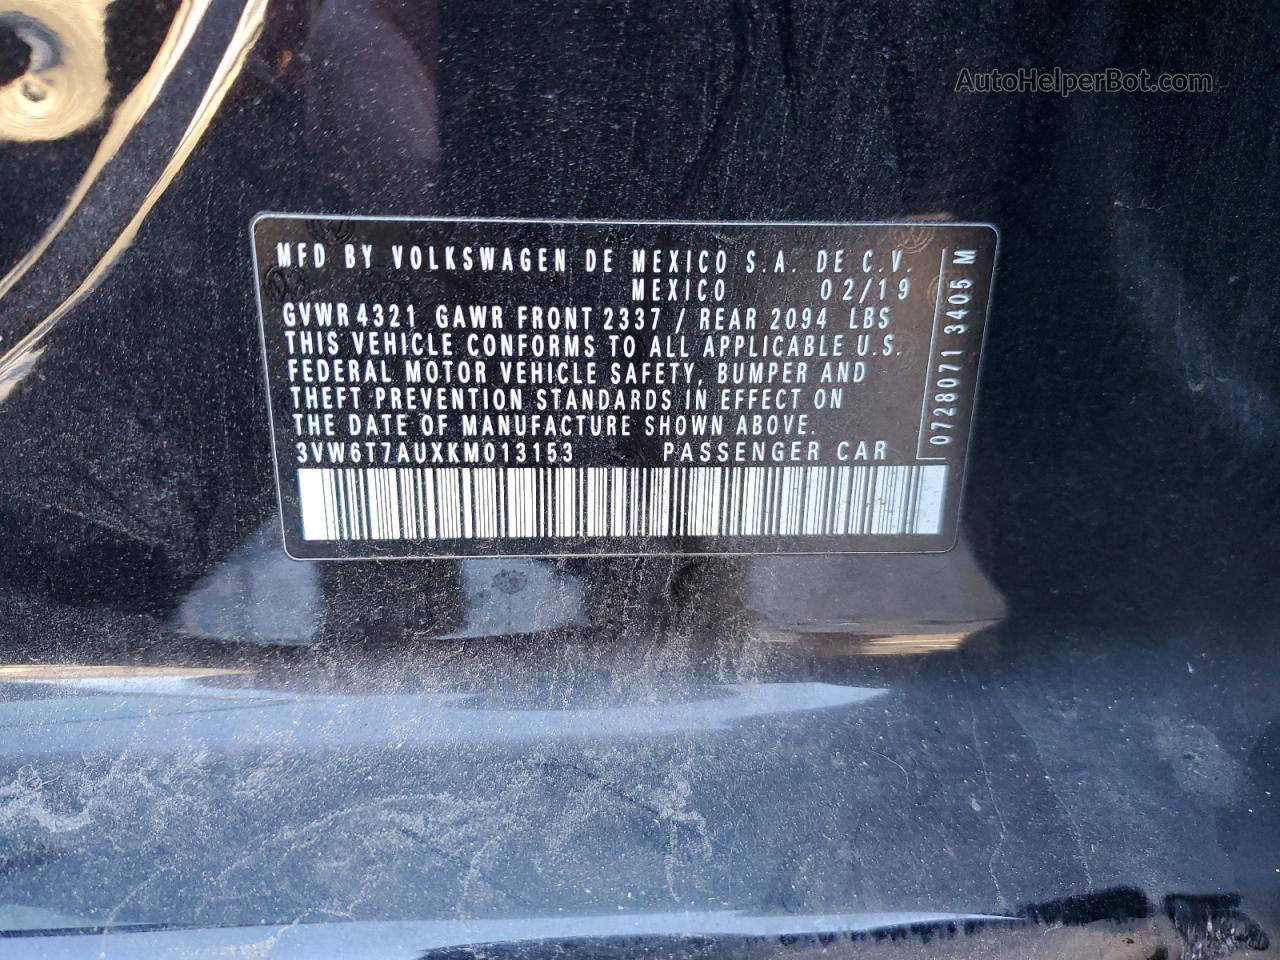 2019 Volkswagen Gti S Черный vin: 3VW6T7AUXKM013153